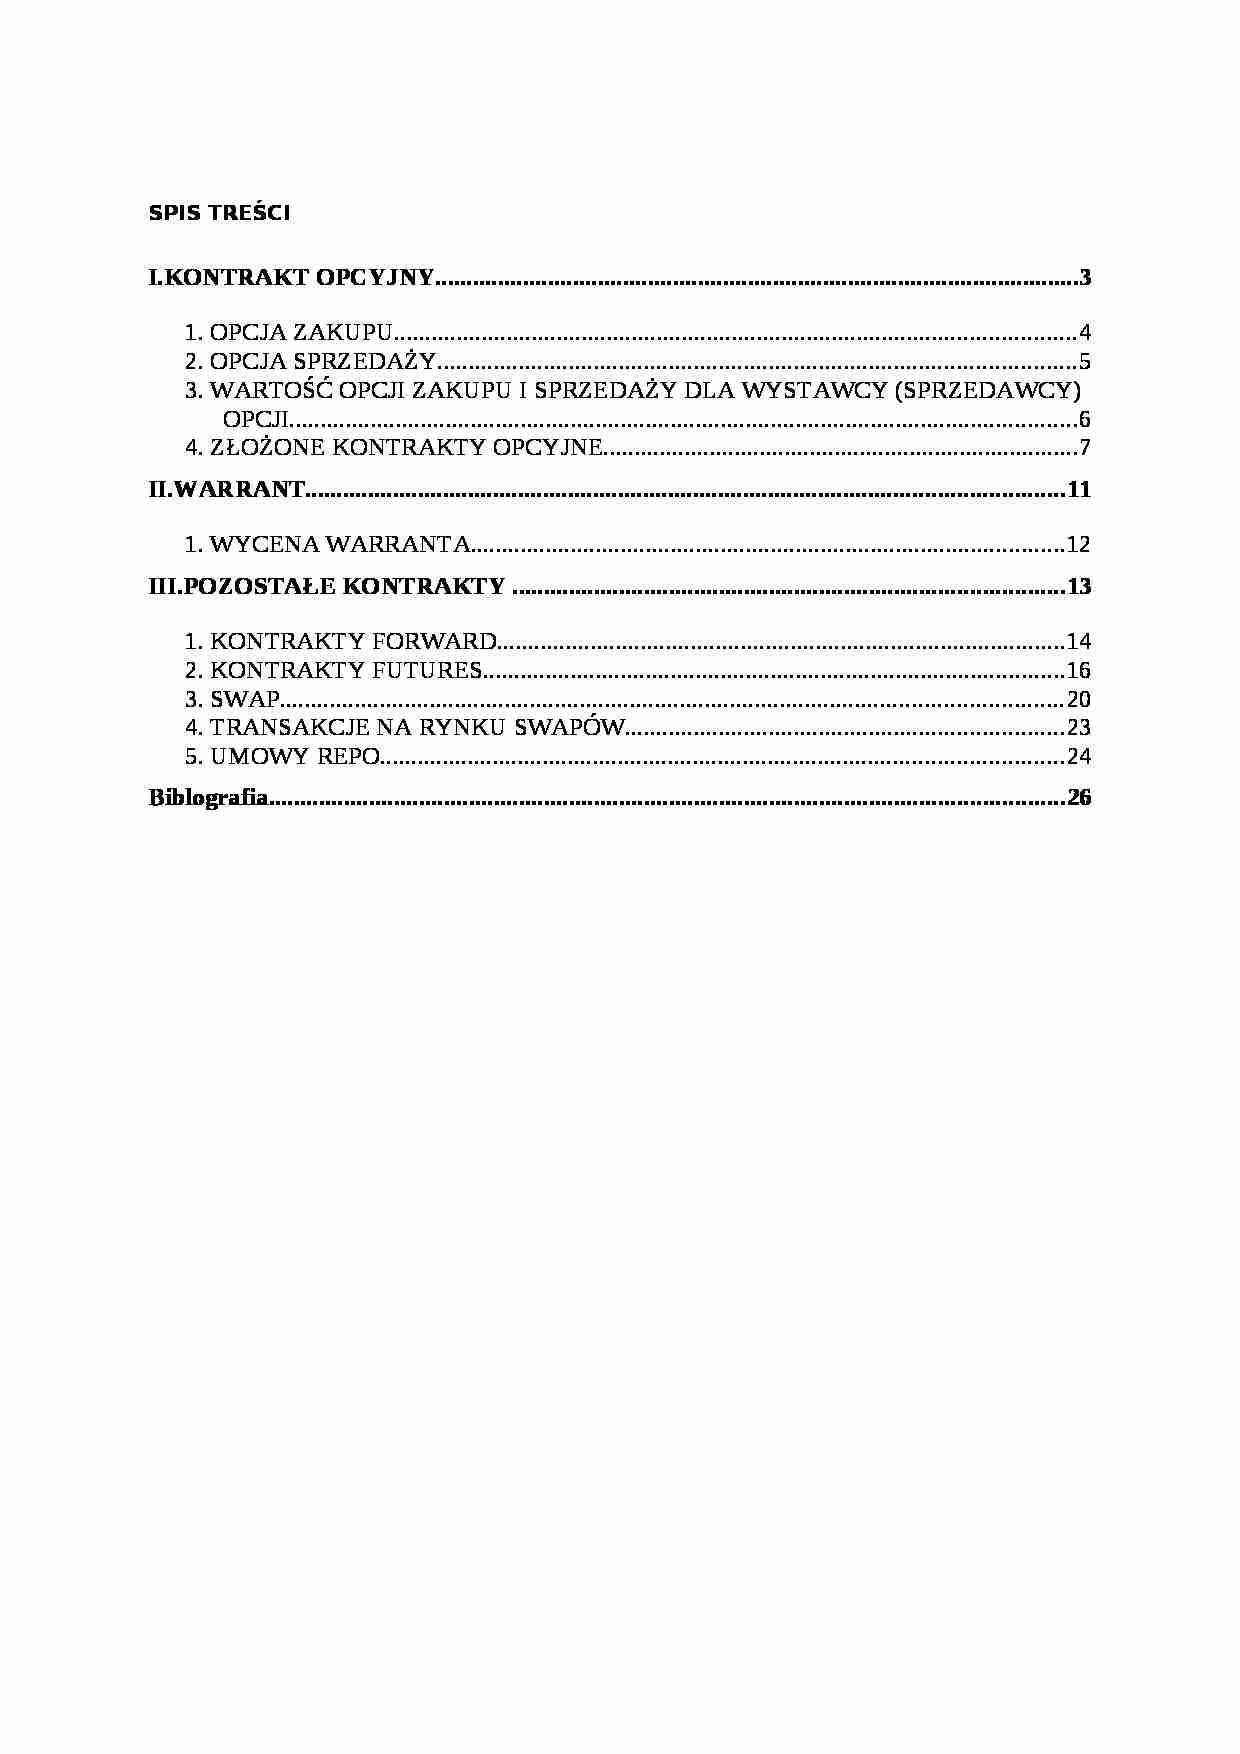 Finanse przedsiębiorstw - Instrumenty pochodne - strona 1